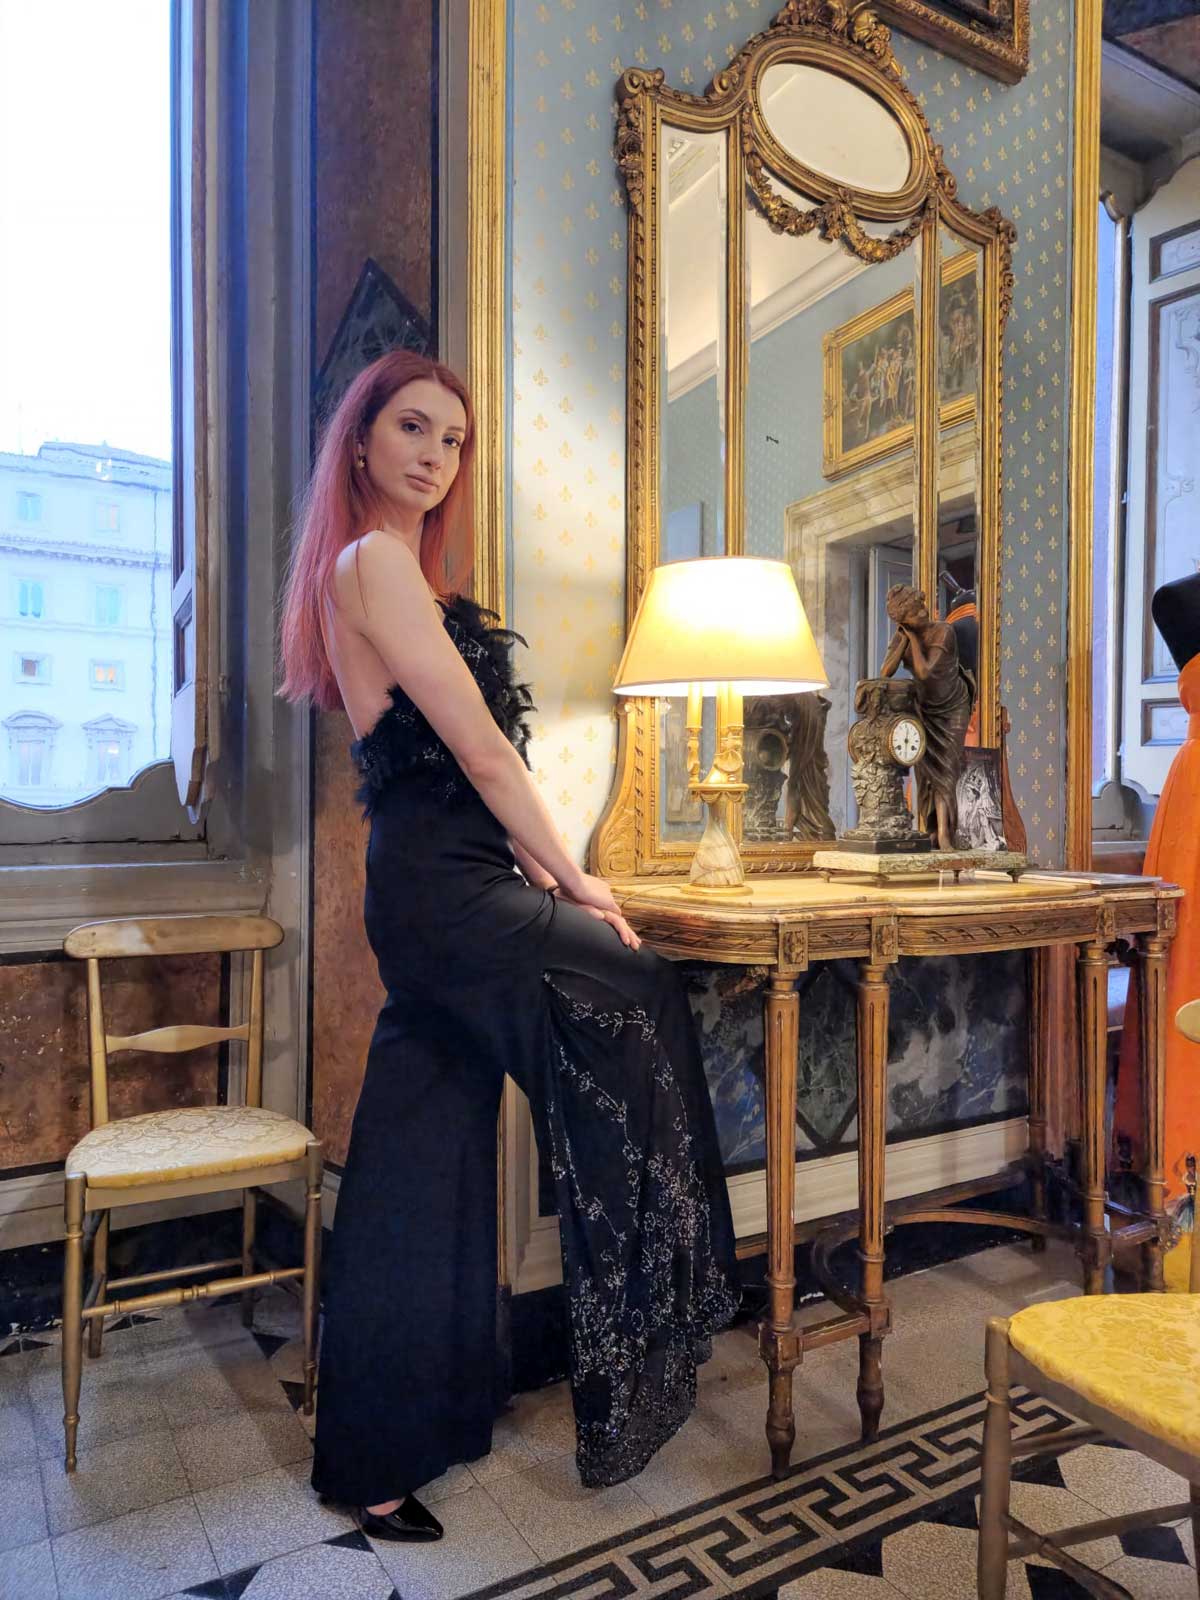 Mod’Art Roma - Il fascino dei colori - sfilata modelle nello storico Palazzo Ferrajoli - evento d’alta moda con gli eleganti abiti di Elins moda donna abito in nero elegante